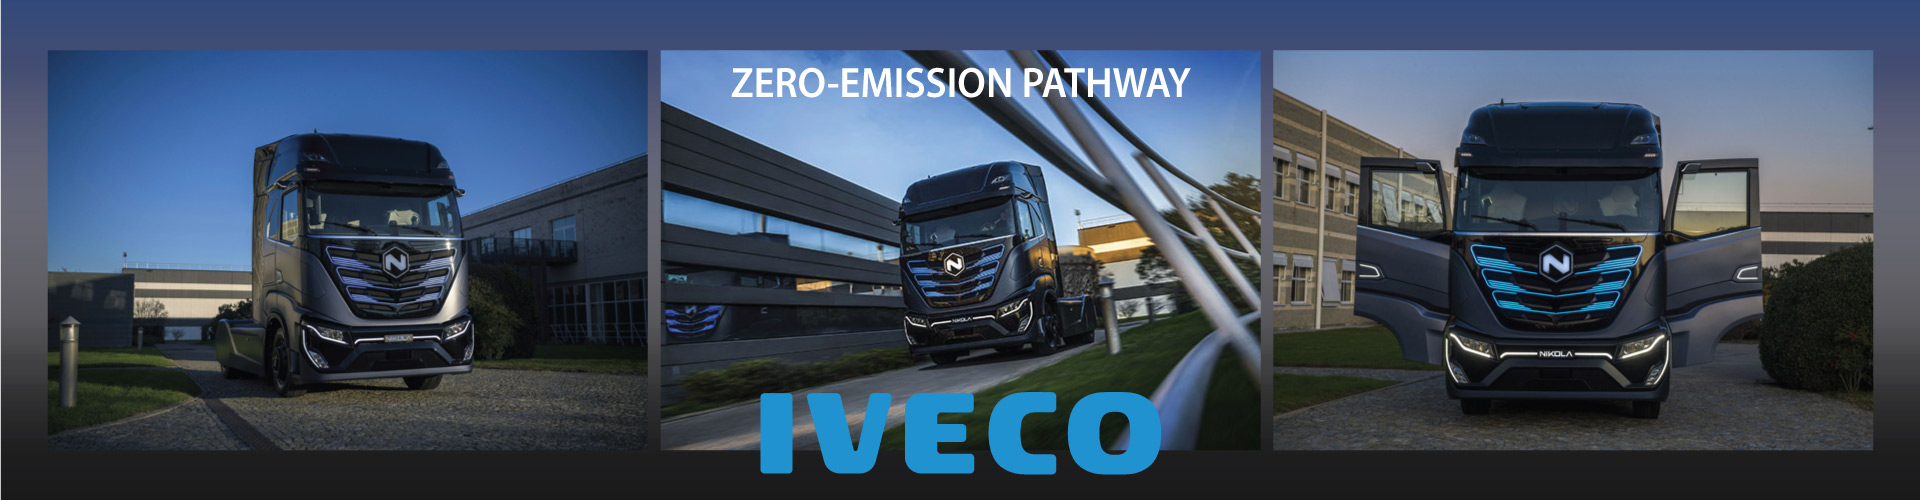 Iveco Outlines Zero Emission Pathway